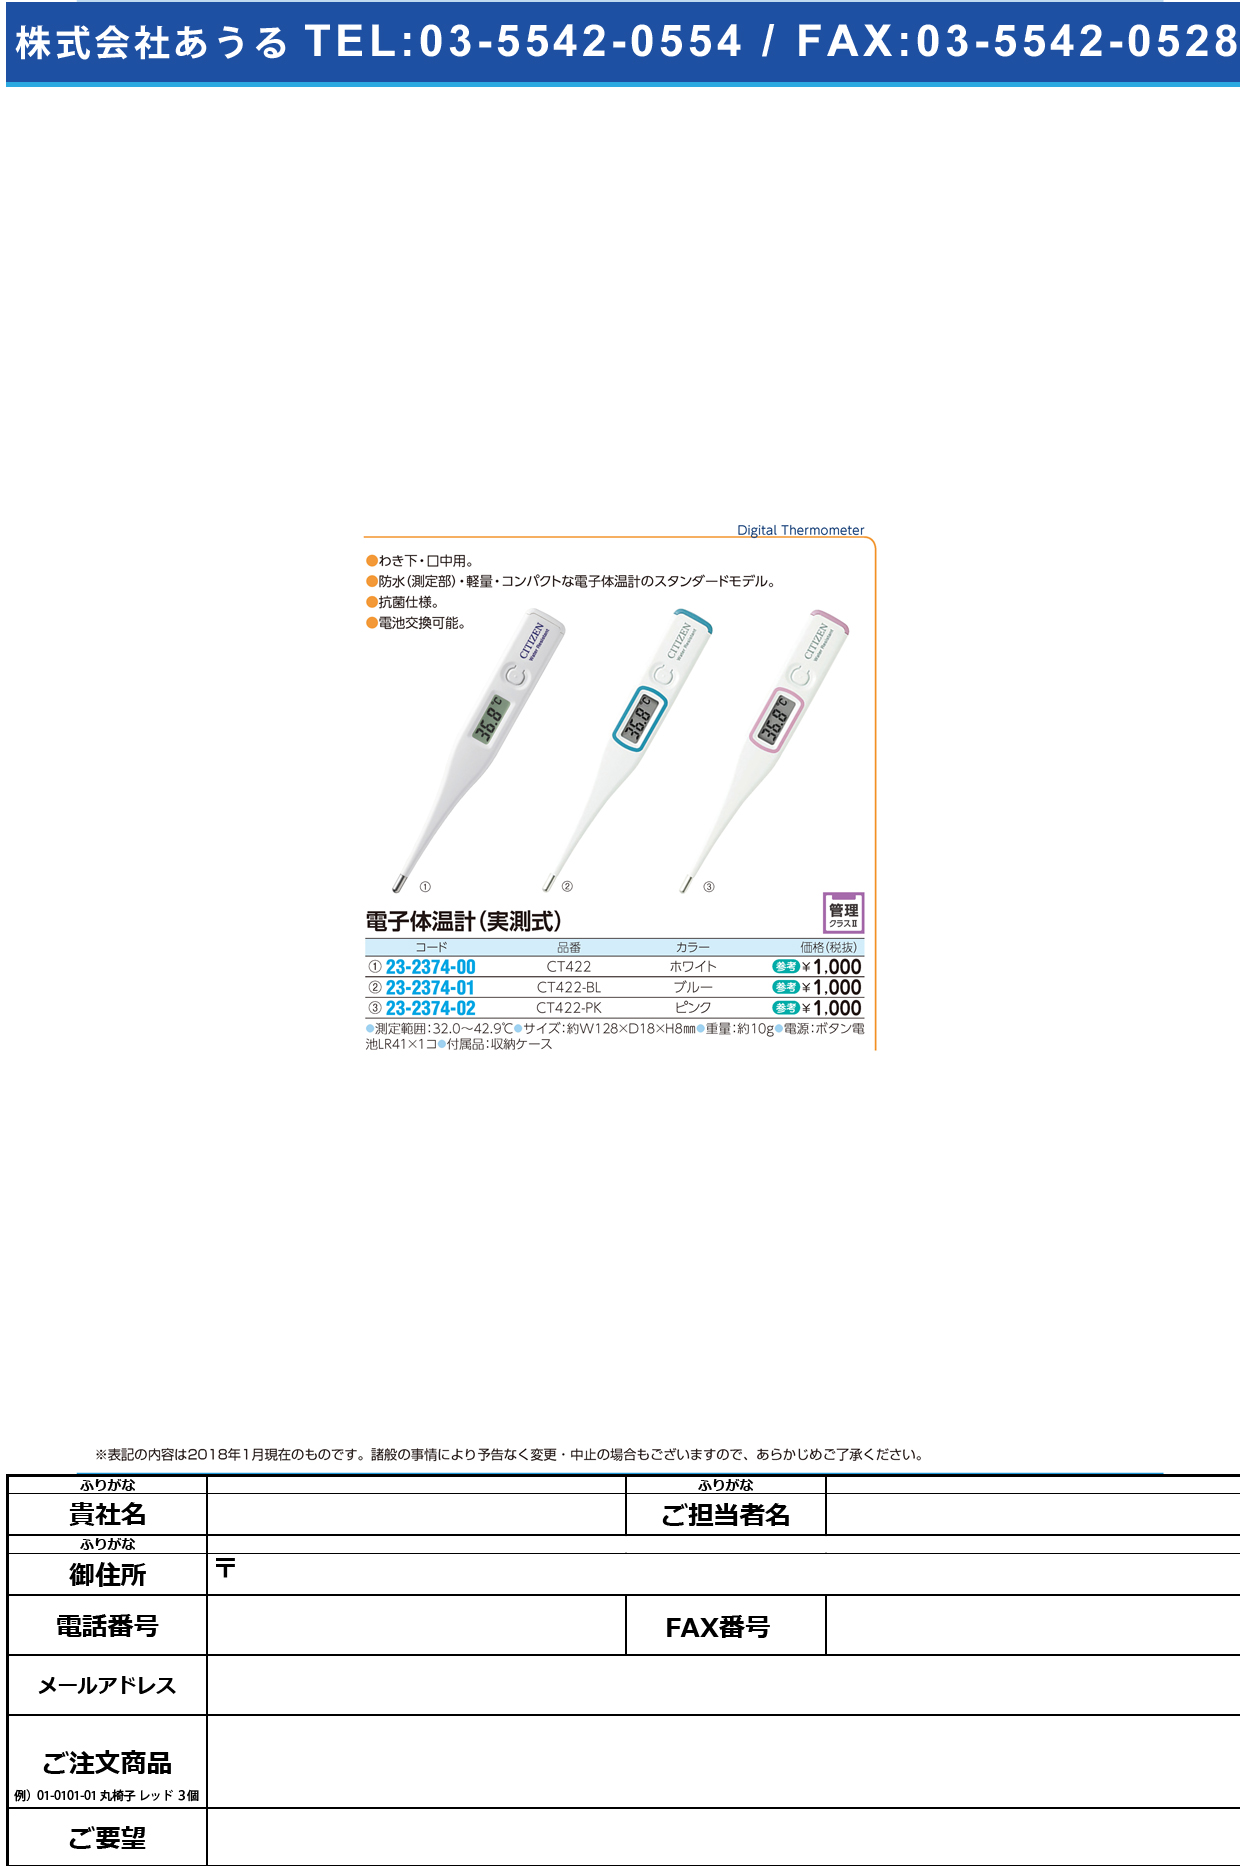 (23-2374-02)シチズン電子体温計（実測式） CT422-PK ｼﾁｽﾞﾝﾃﾞﾝｼﾀｲｵﾝｹｲ【1本単位】【2018年カタログ商品】